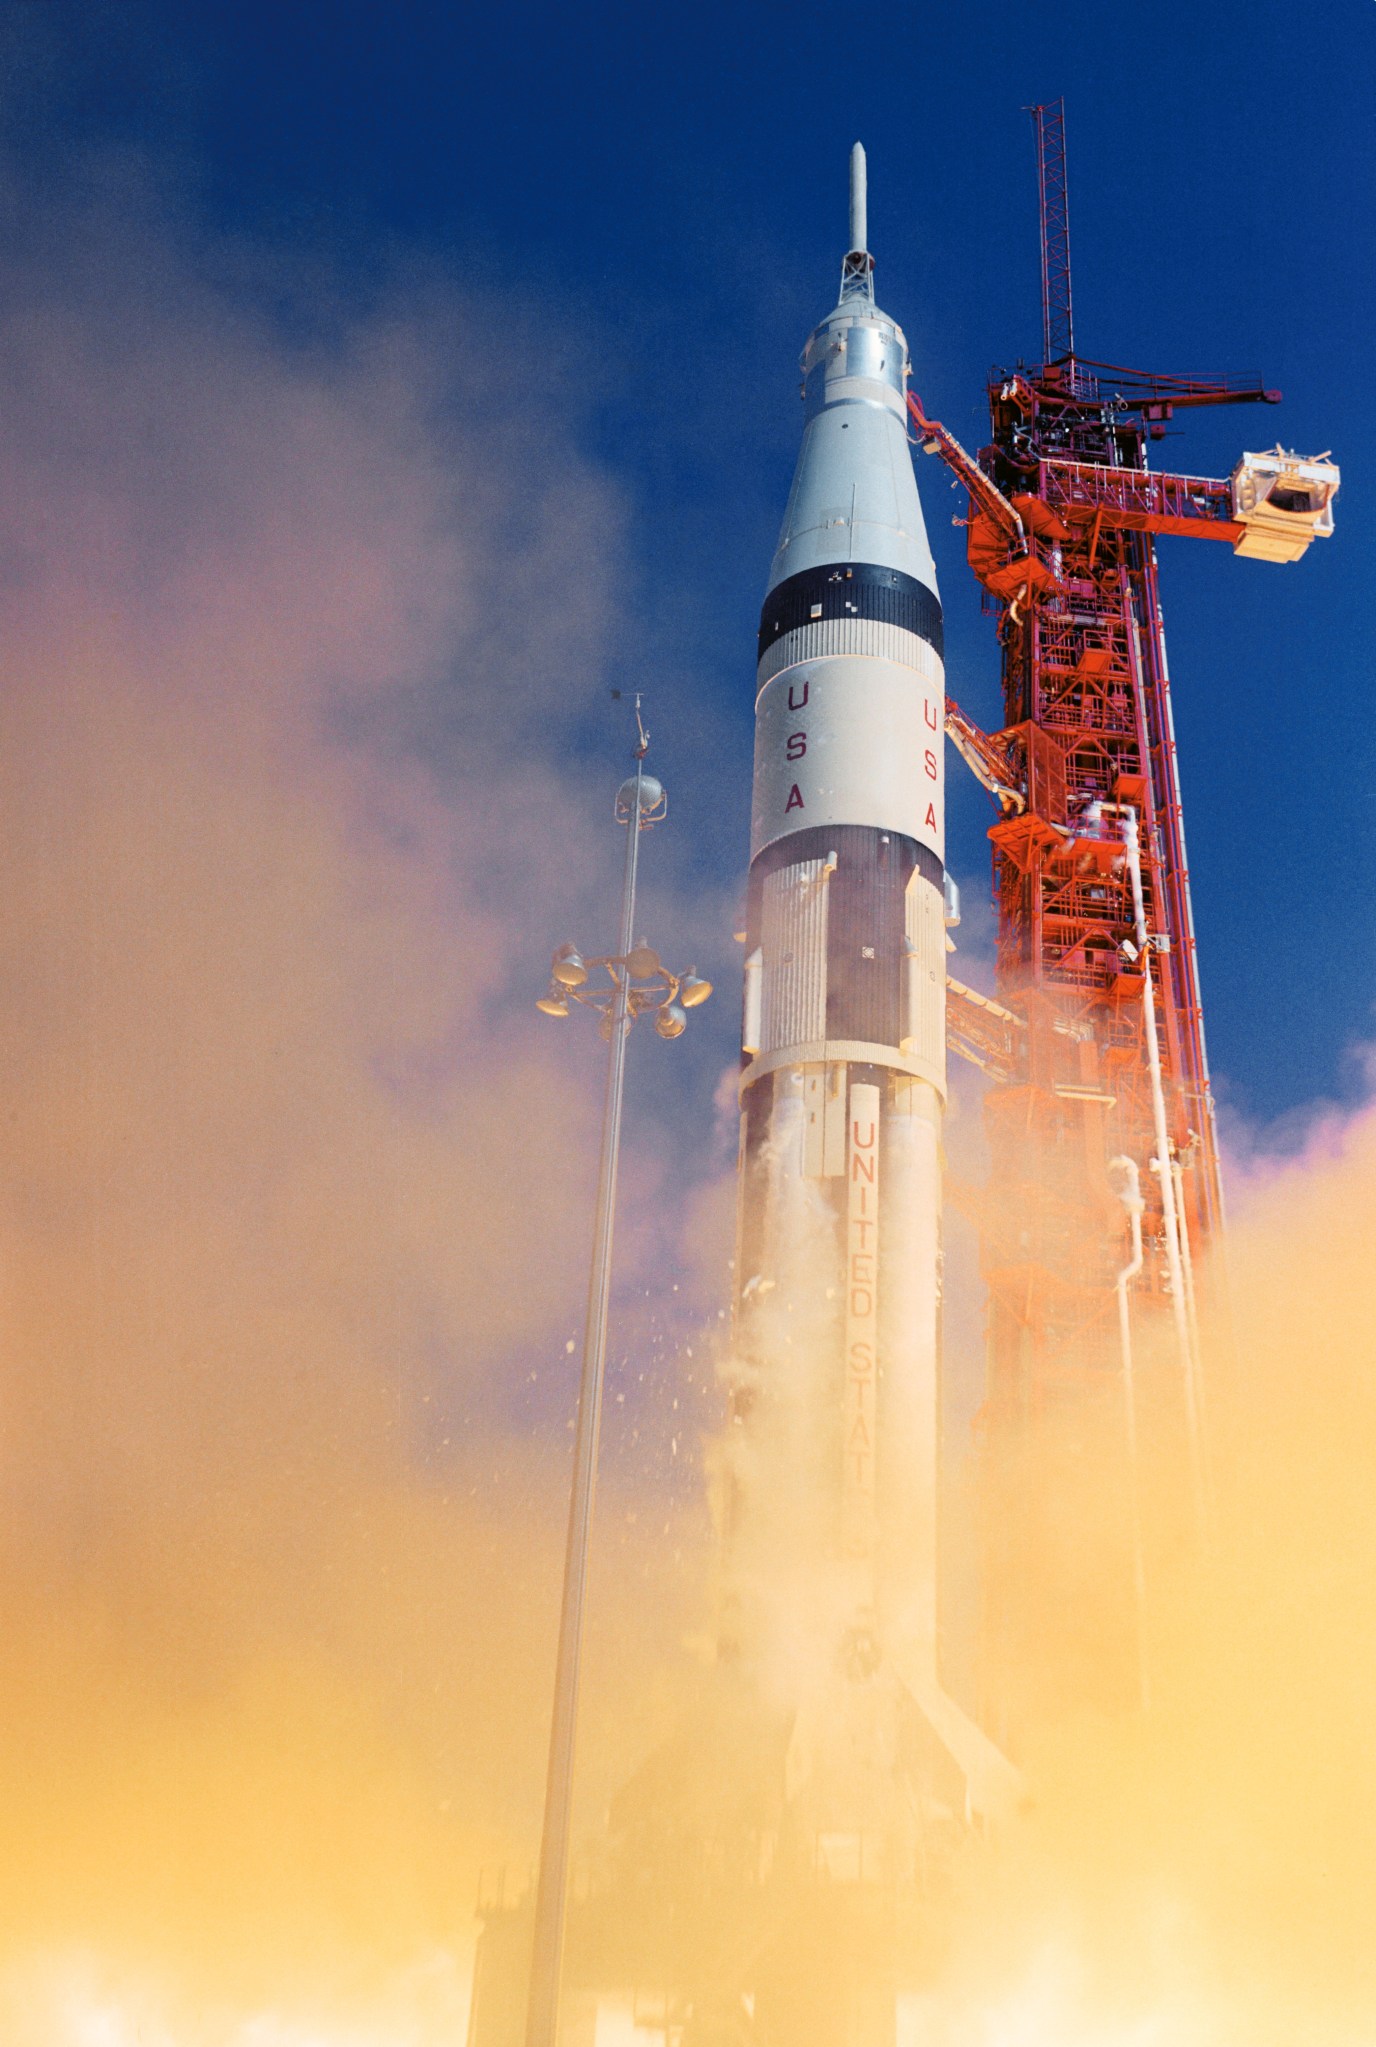 A Saturn 1B rocket